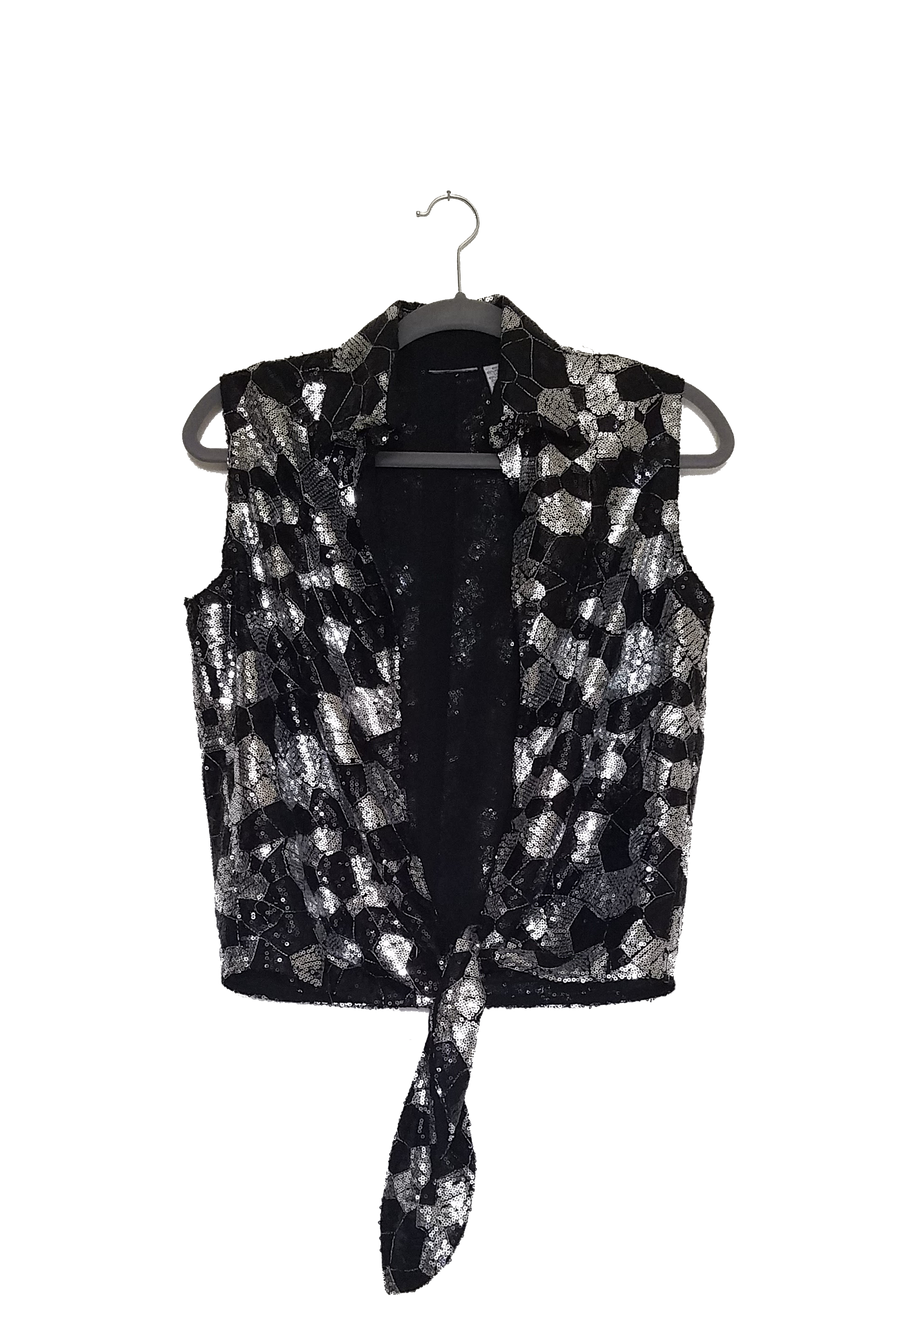 #thejacketproject - Altered Sequin Tie Top/Jacket